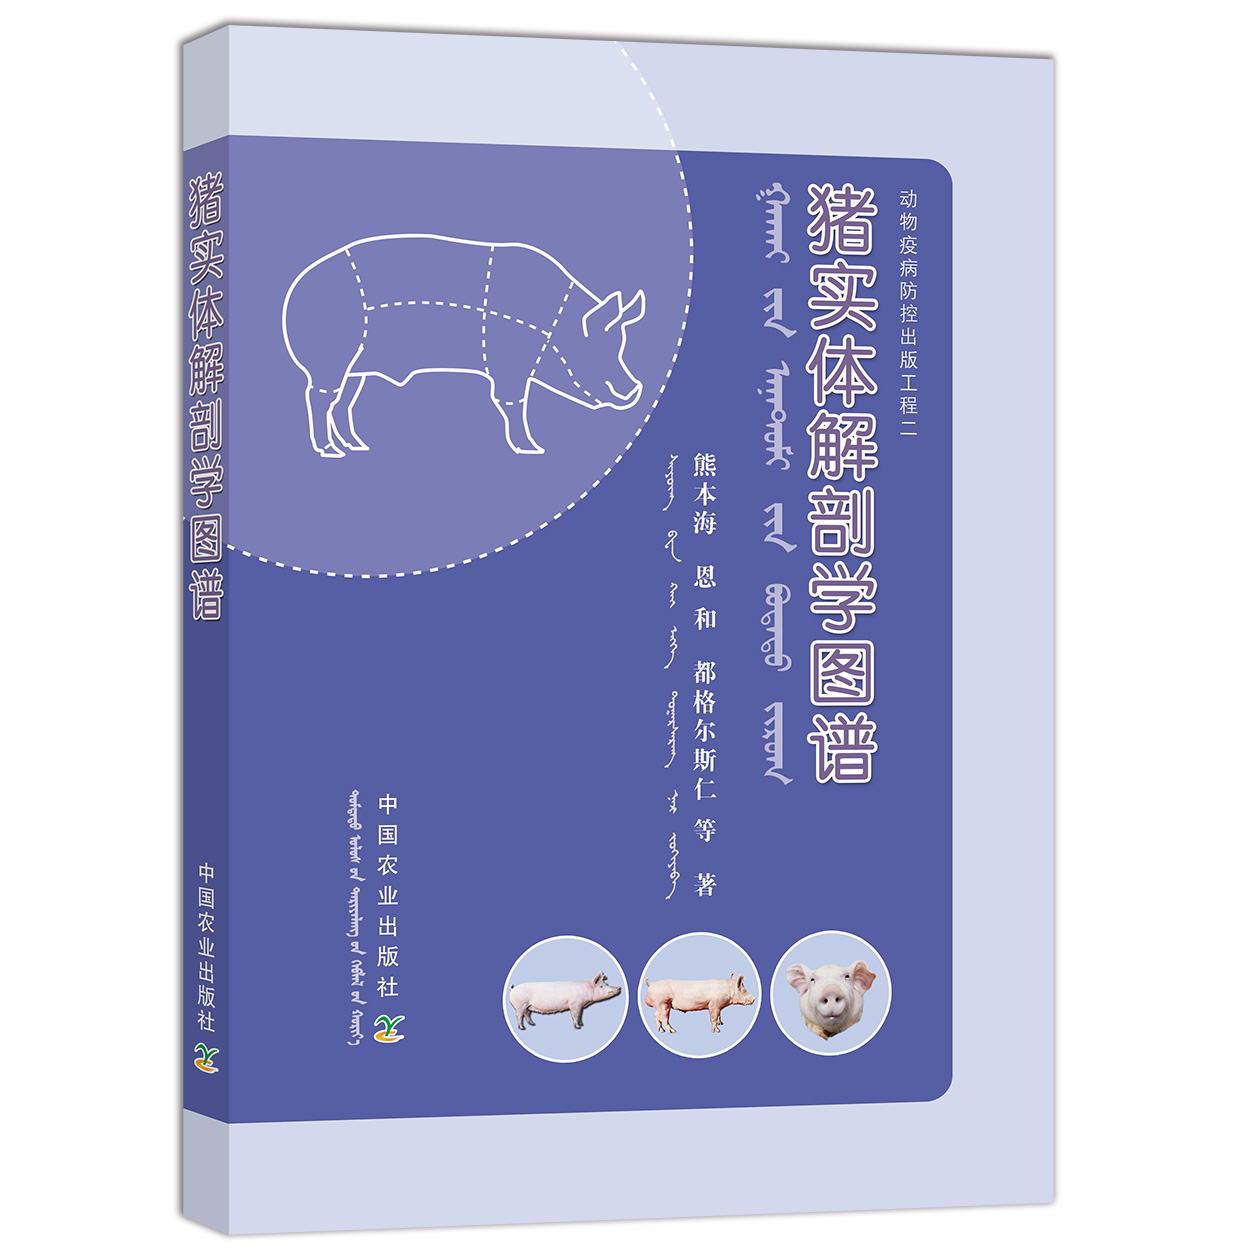 【中国农业出版社官方正版】猪实体解剖学图谱 熊本海  恩和  都格尔斯仁 等  著